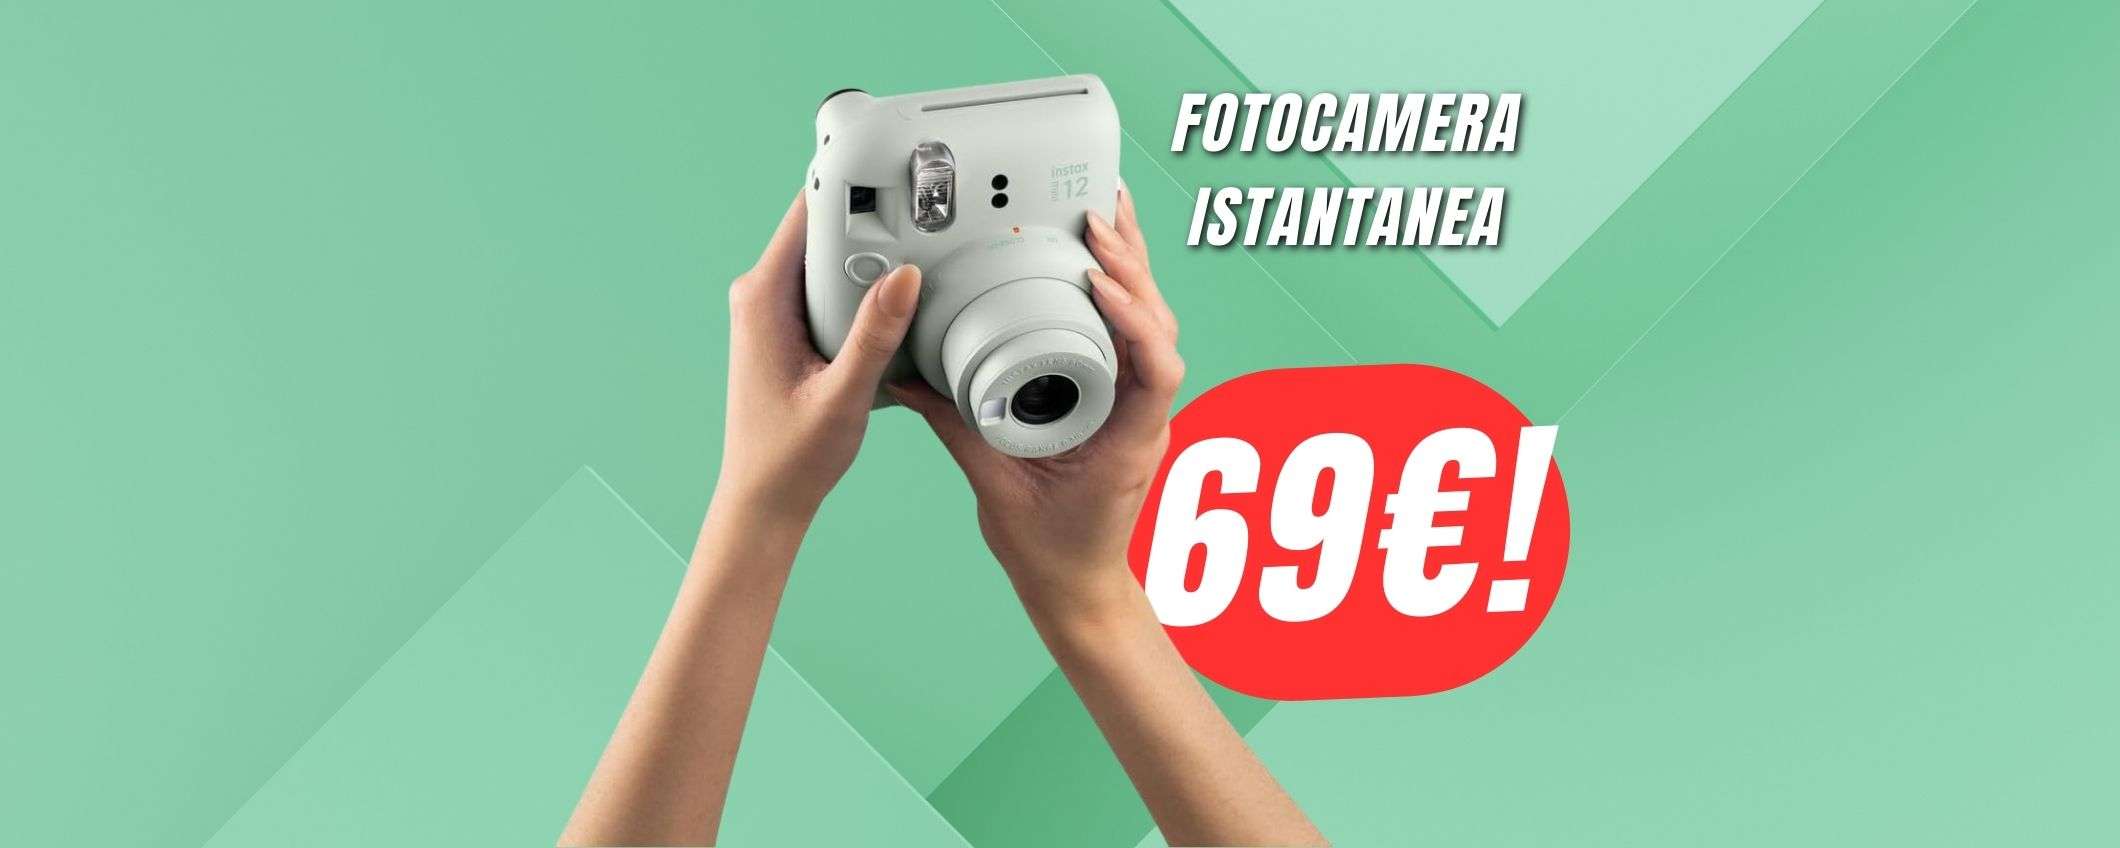 Immortala per sempre i tuoi ricordi per soli 69€ con la fotocamera Fujifilm in OFFERTA!